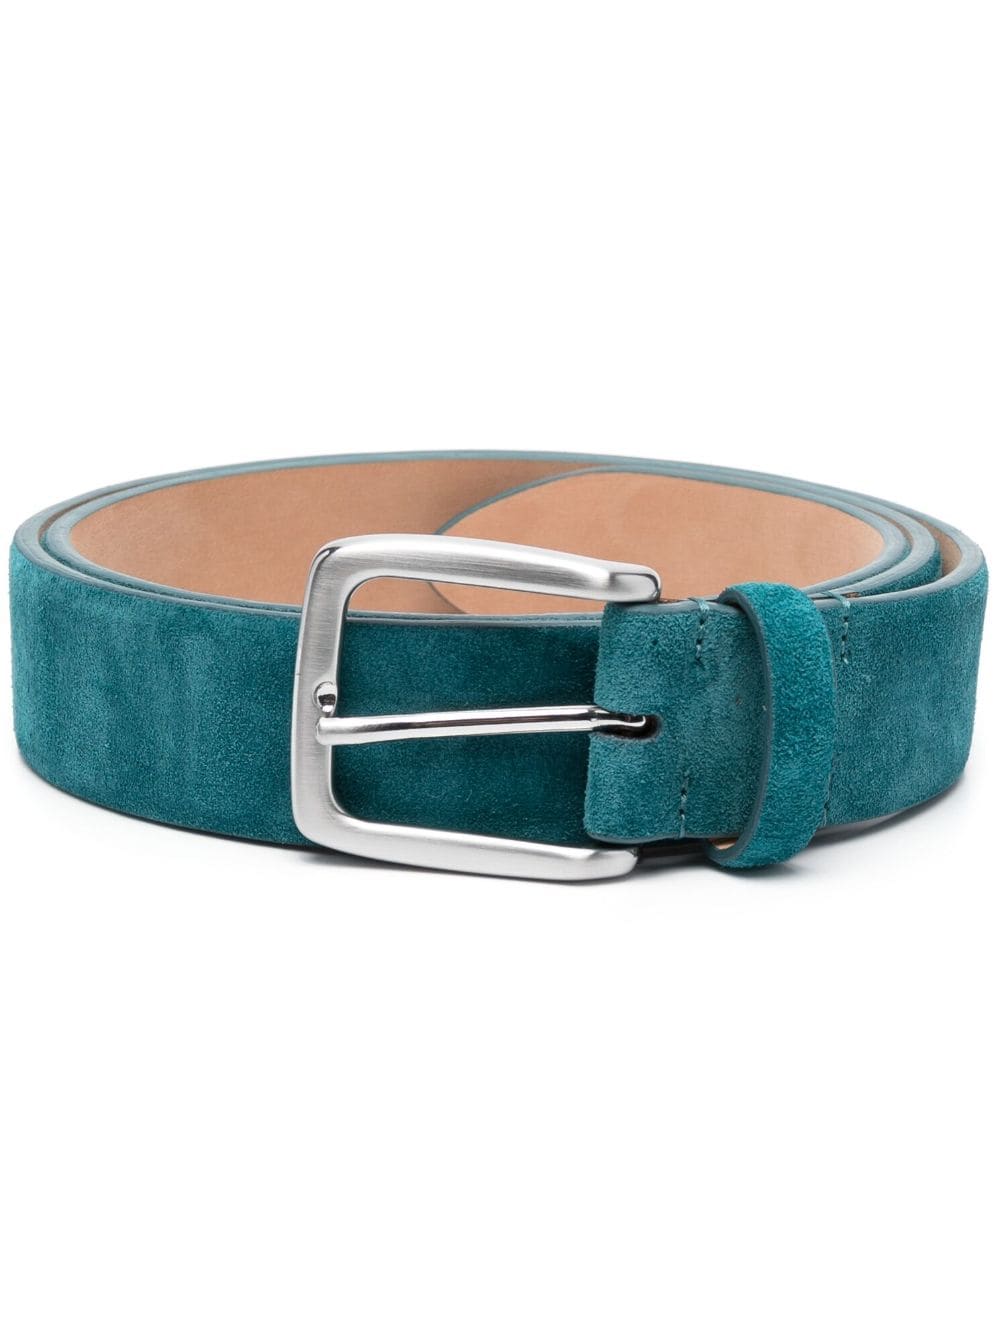 Moorer suede leather belt - Blue